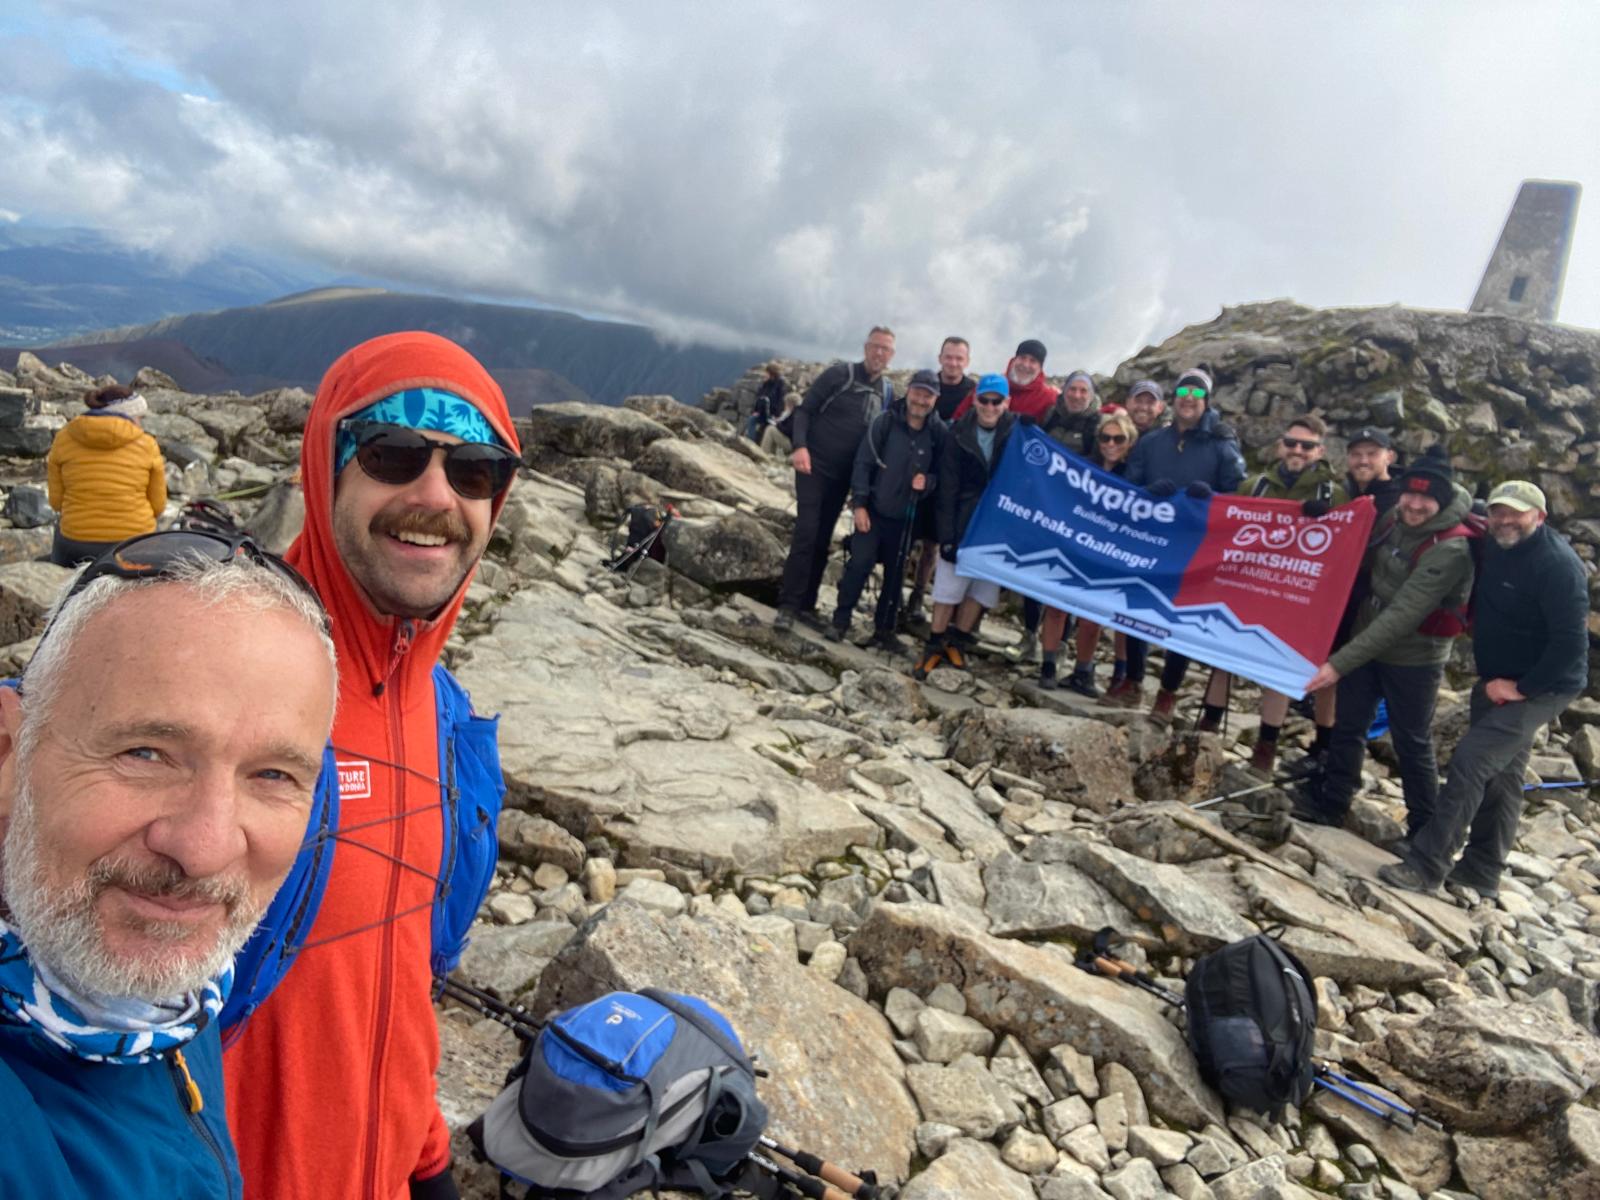 The team reach the summit of Ben Nevis.